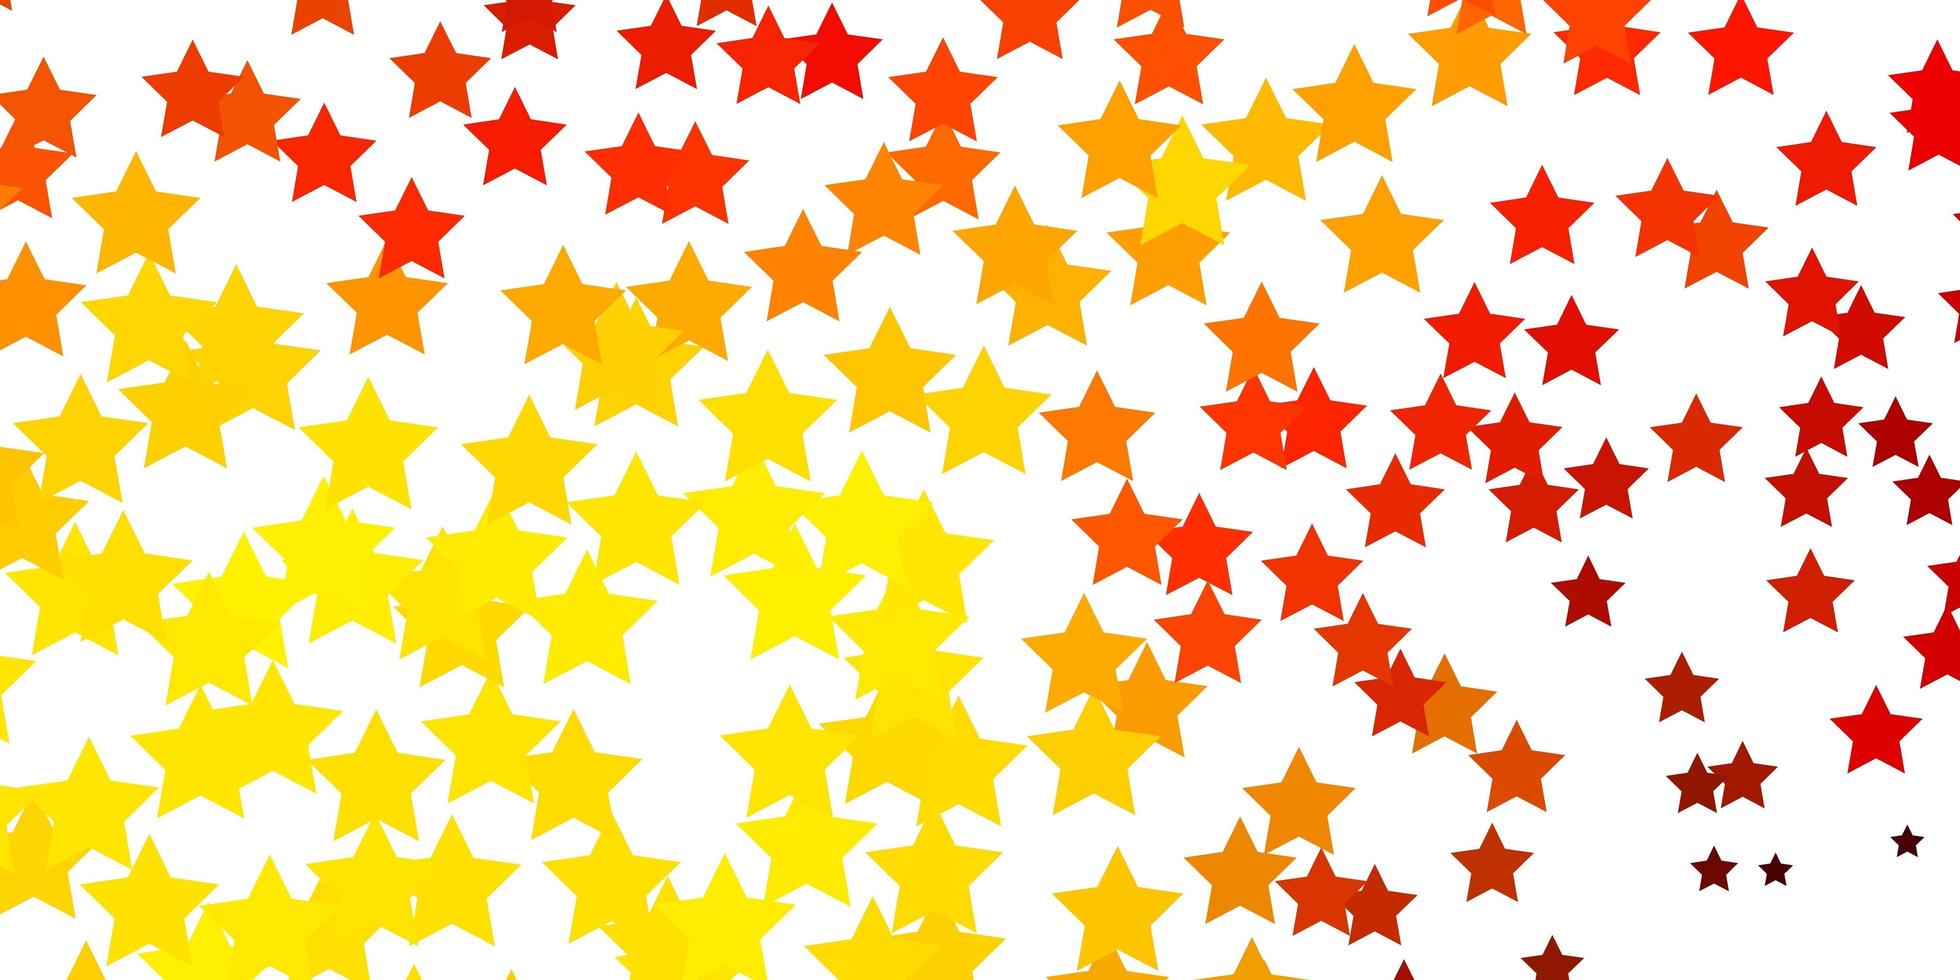 ljus orange vektor bakgrund med små och stora stjärnor. modern geometrisk abstrakt illustration med stjärnor. tema för mobiltelefoner.